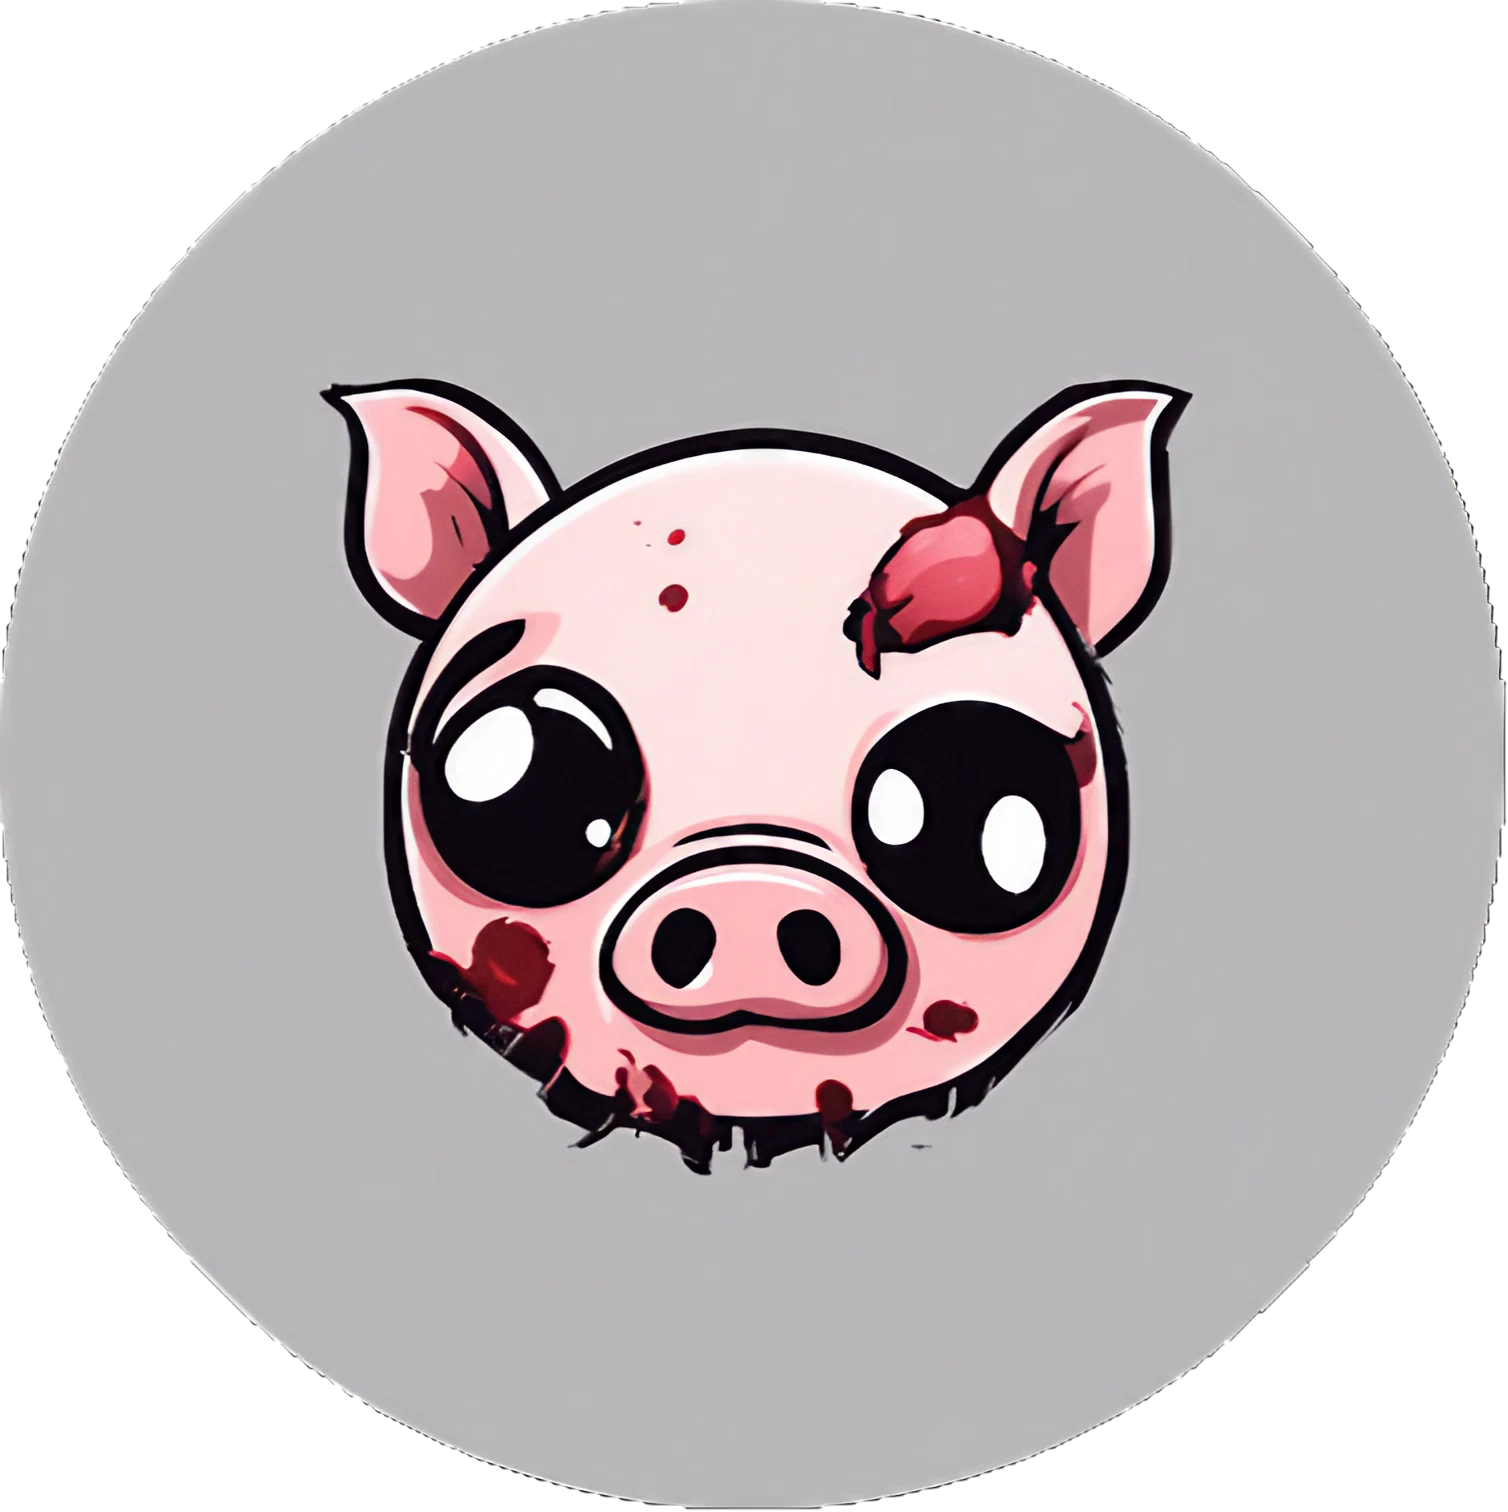 Chibi Kawaii Zombie Schweinchen - Sticker - 3x3cm